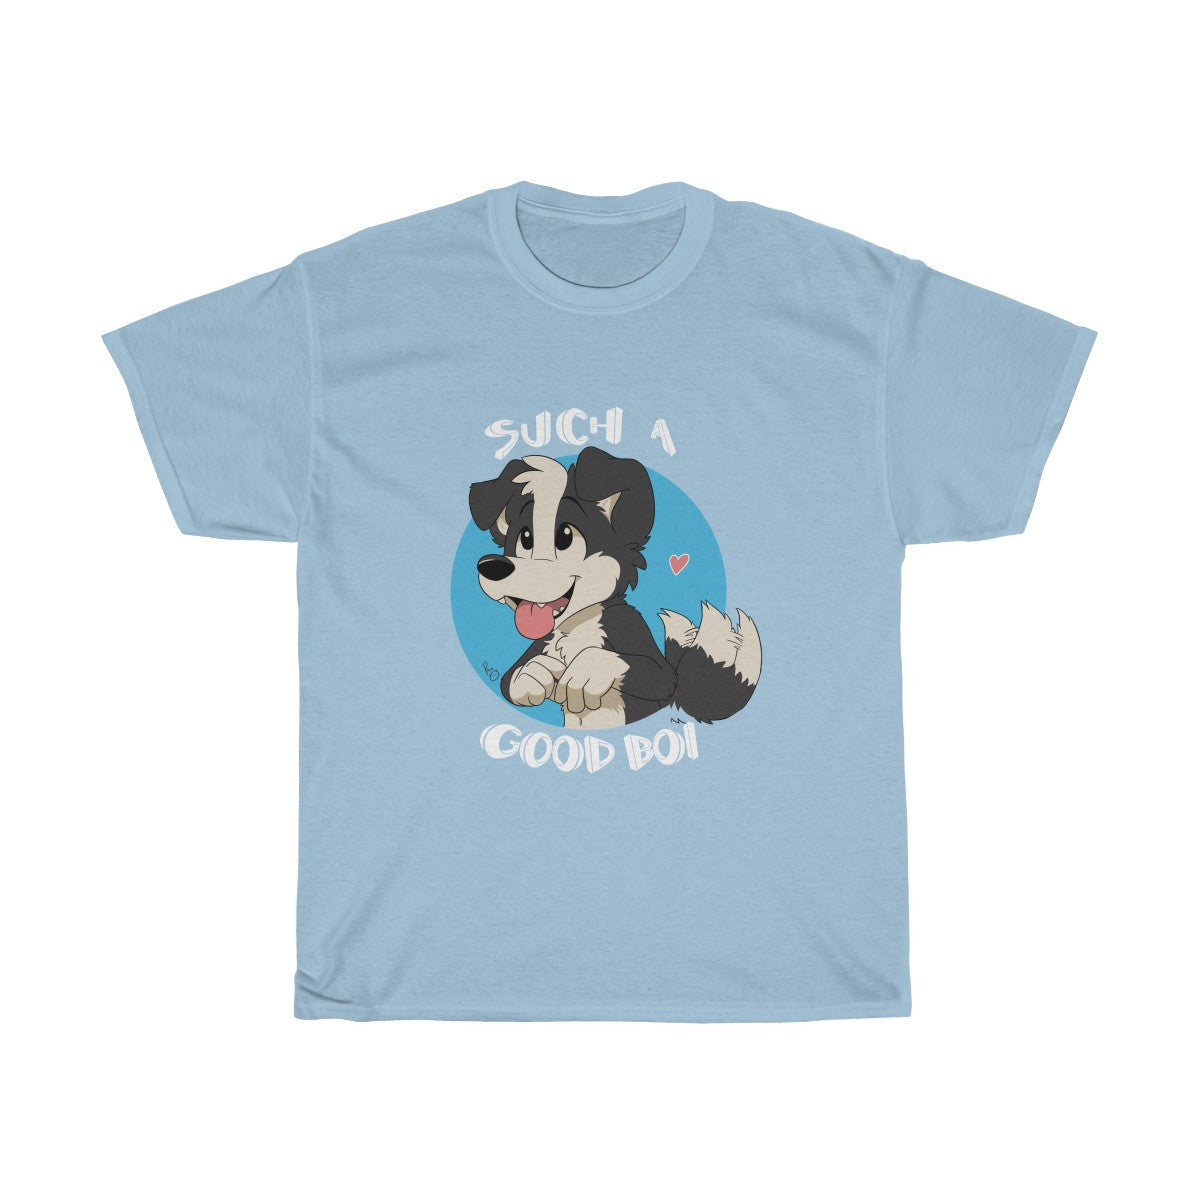 Such a Good Boy - T-Shirt T-Shirt Paco Panda Light Blue S 